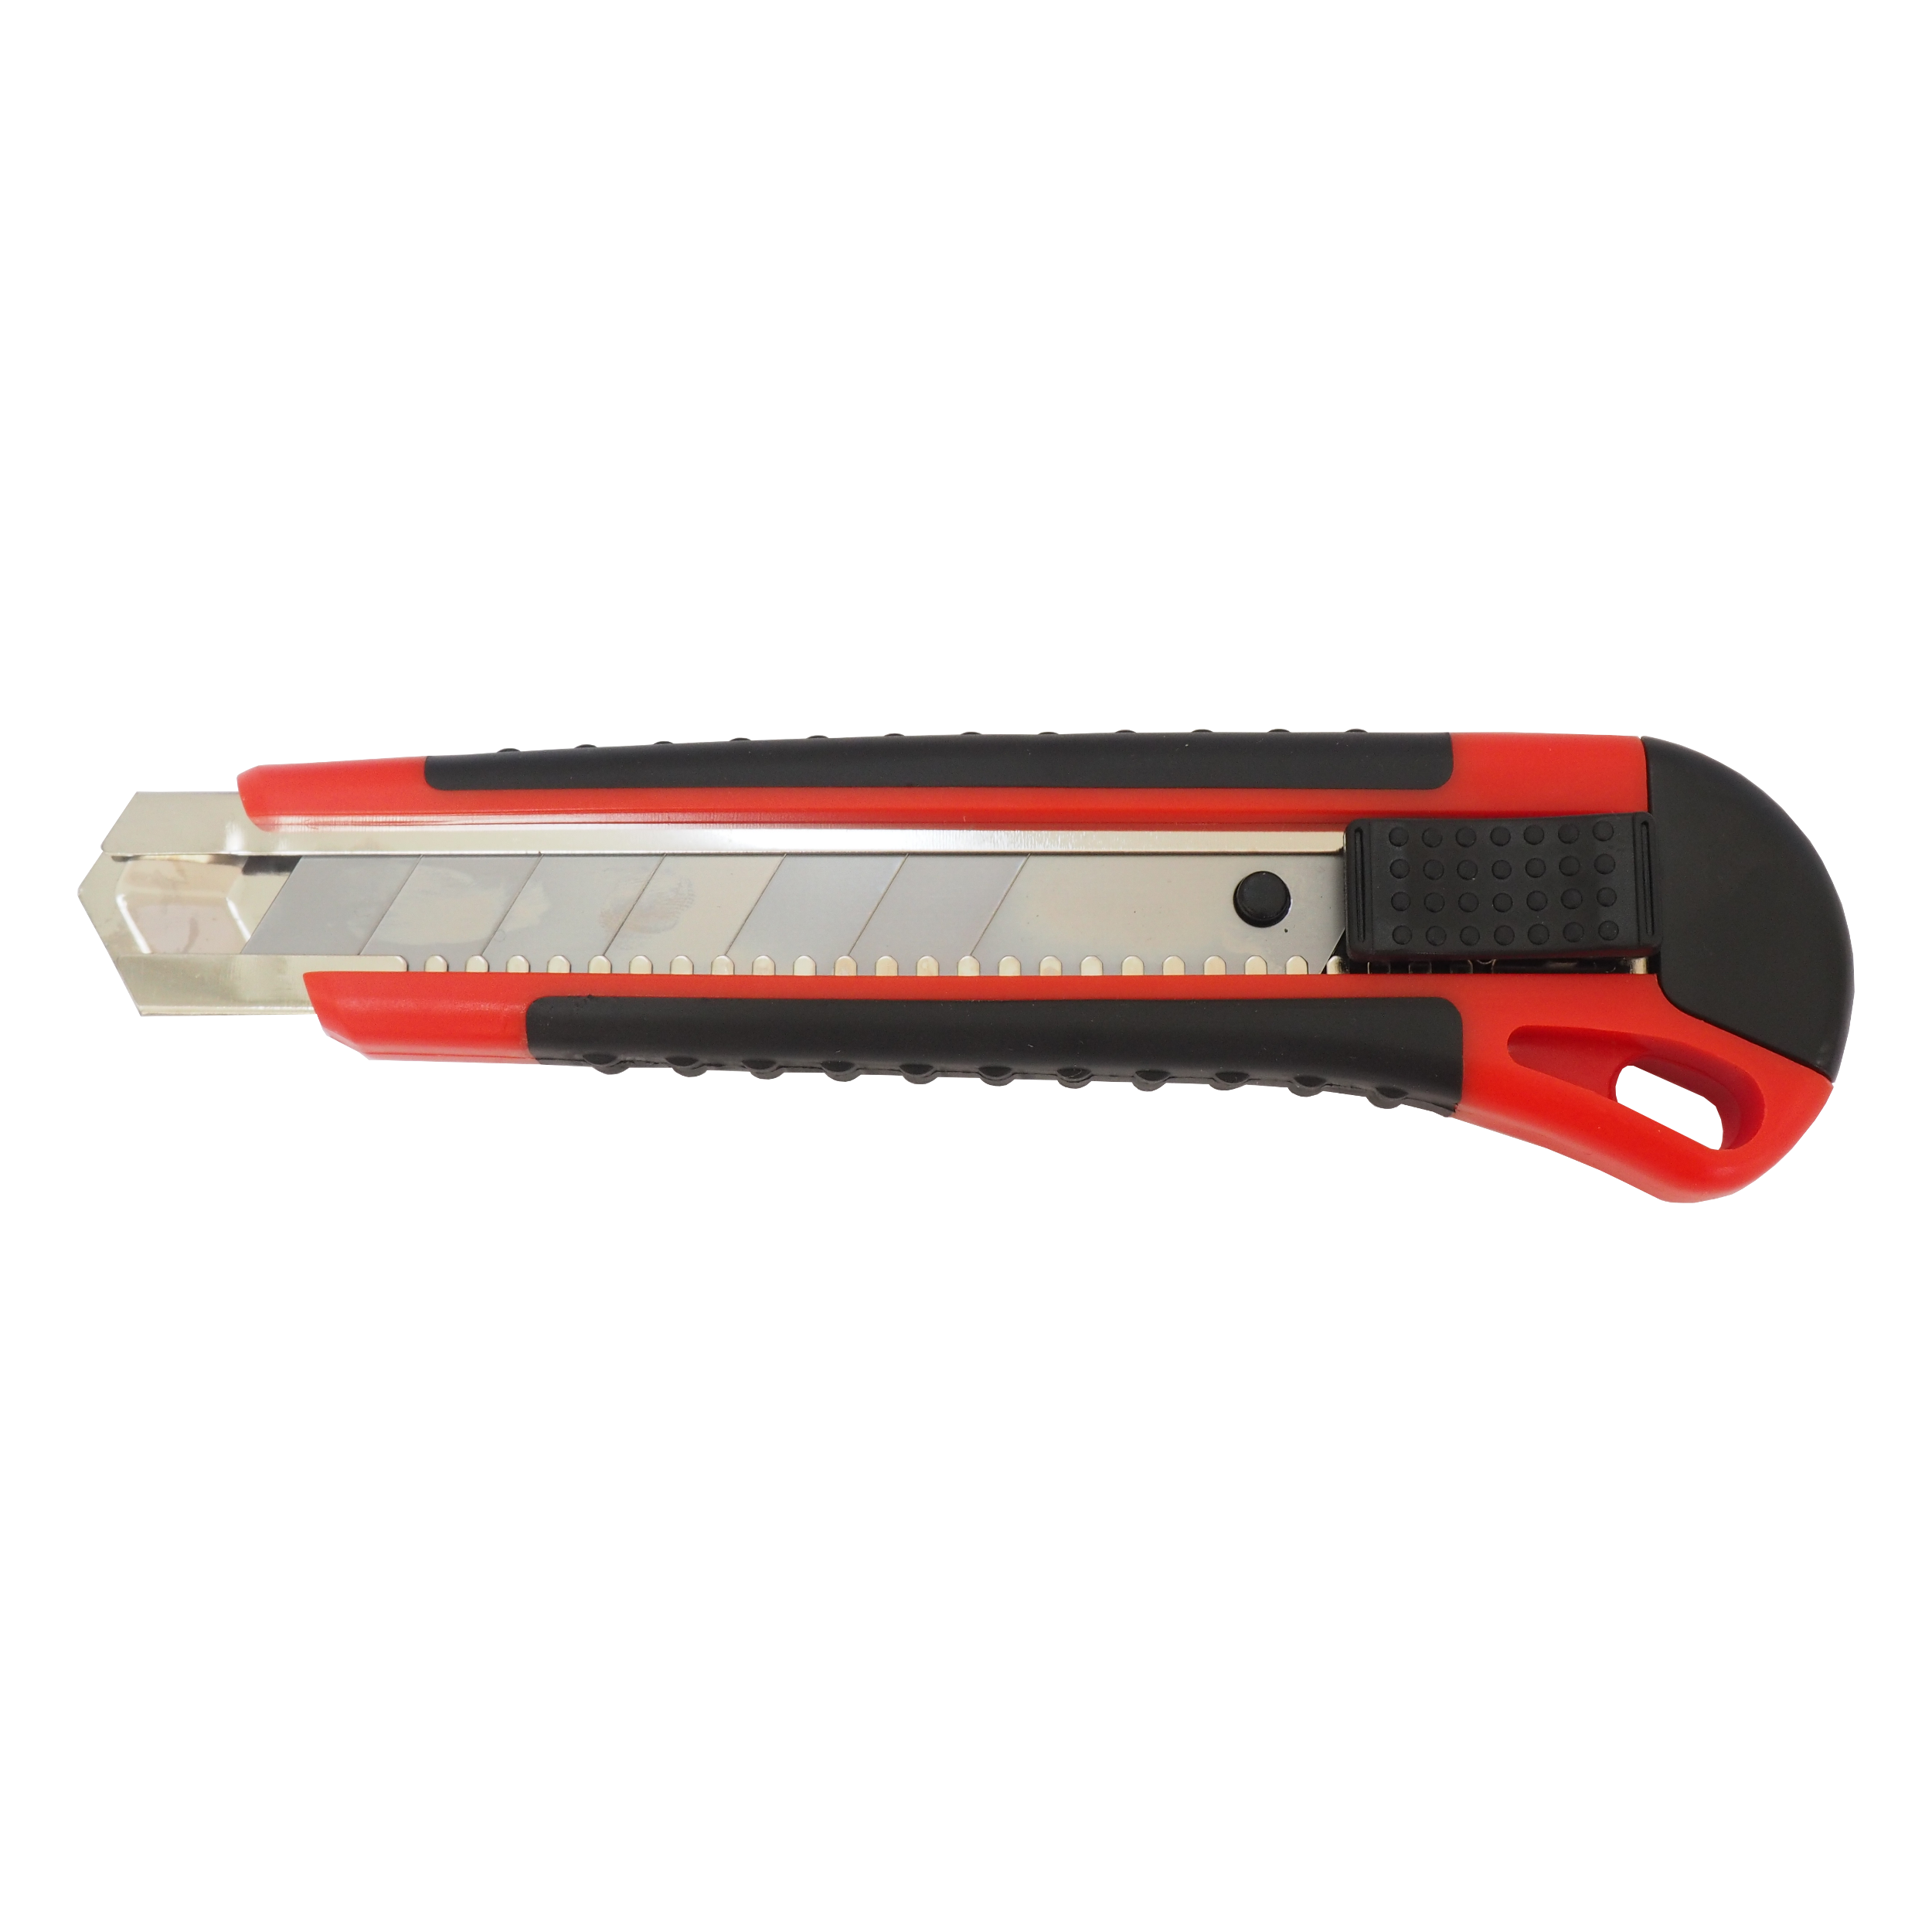 TOPTRADE nůž odlamovací, plastový, s kovovou výztuhou, v blistru, 25 mm, profi 0.15 Kg TOP Sklad4 200217 107